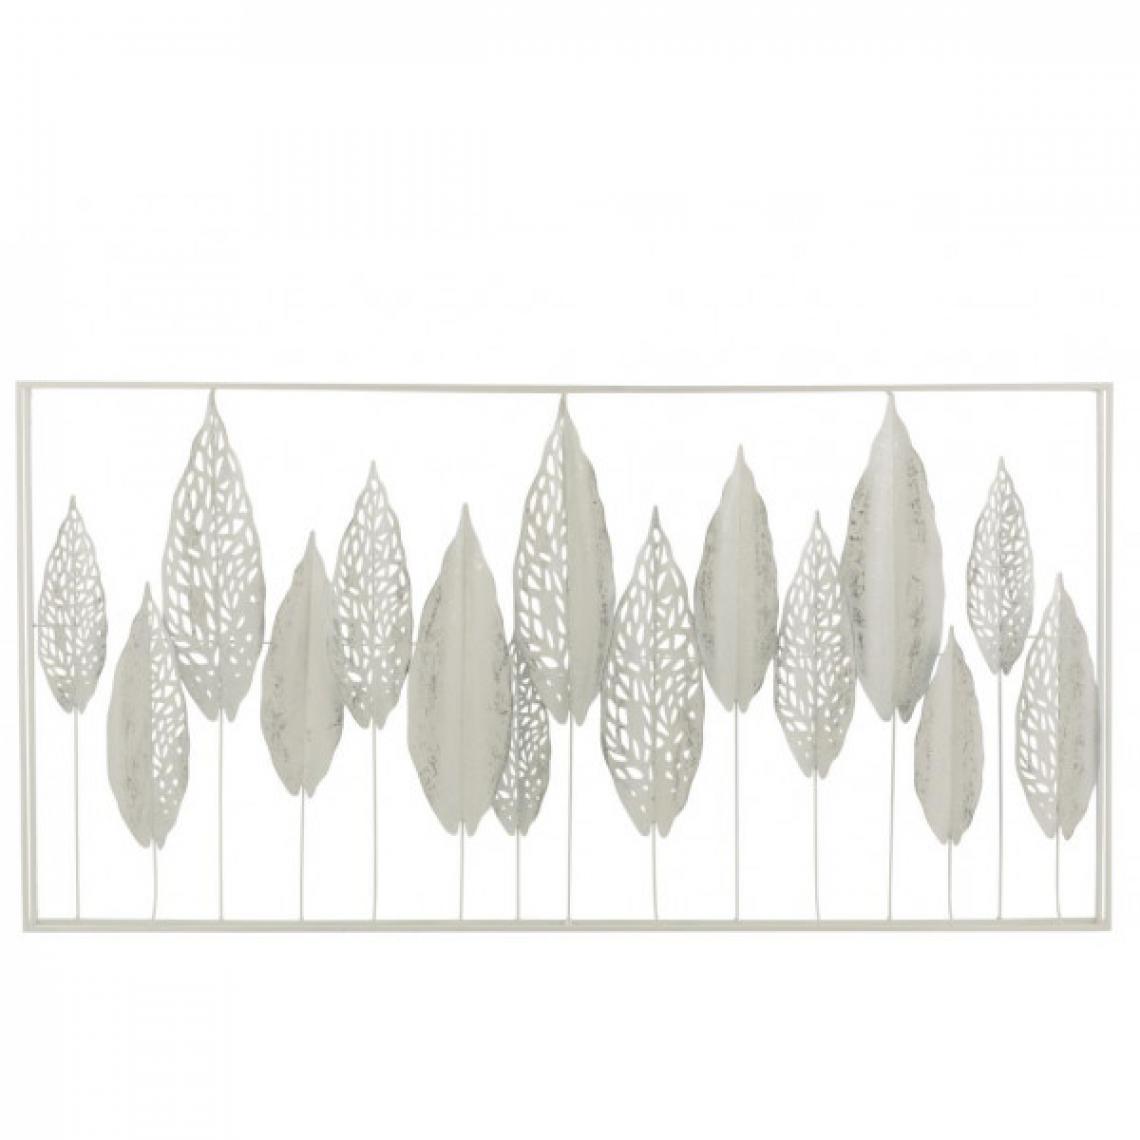 Dansmamaison - Decoration Murale Feuilles Metal Blanc - L 135 x l 69 x H 7 cm - Objets déco